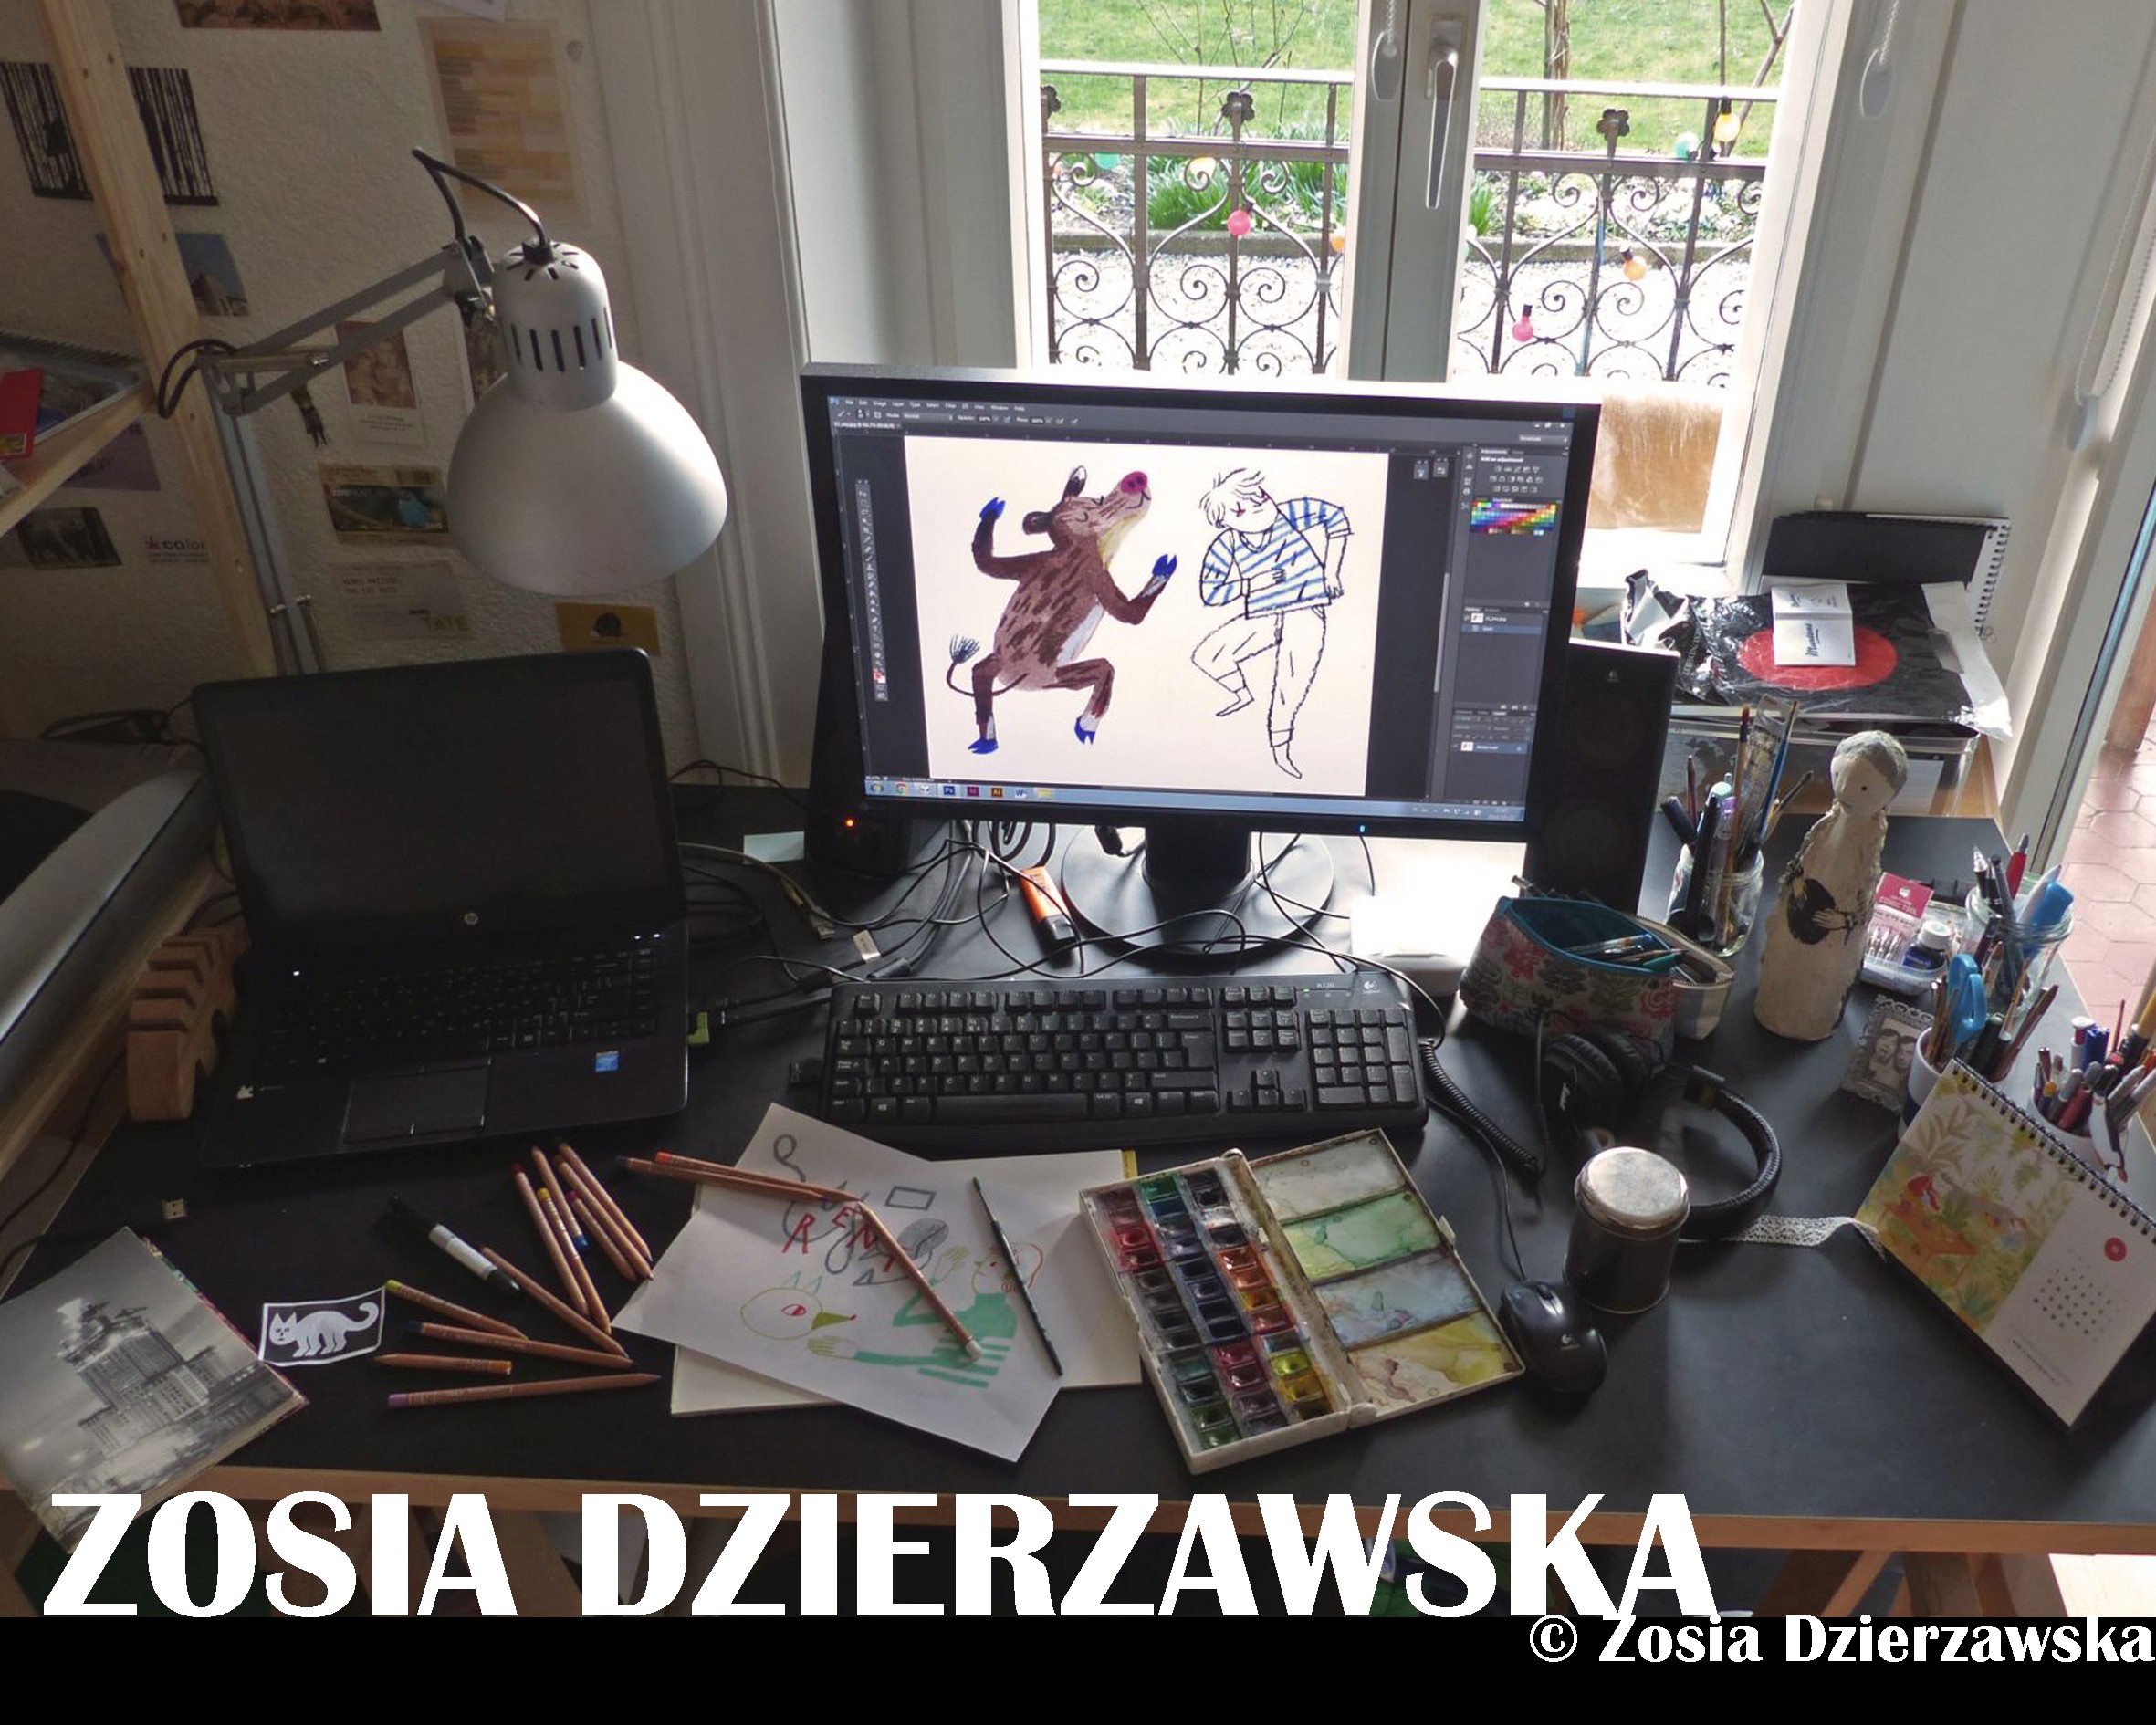 Zosia Dzierzawska